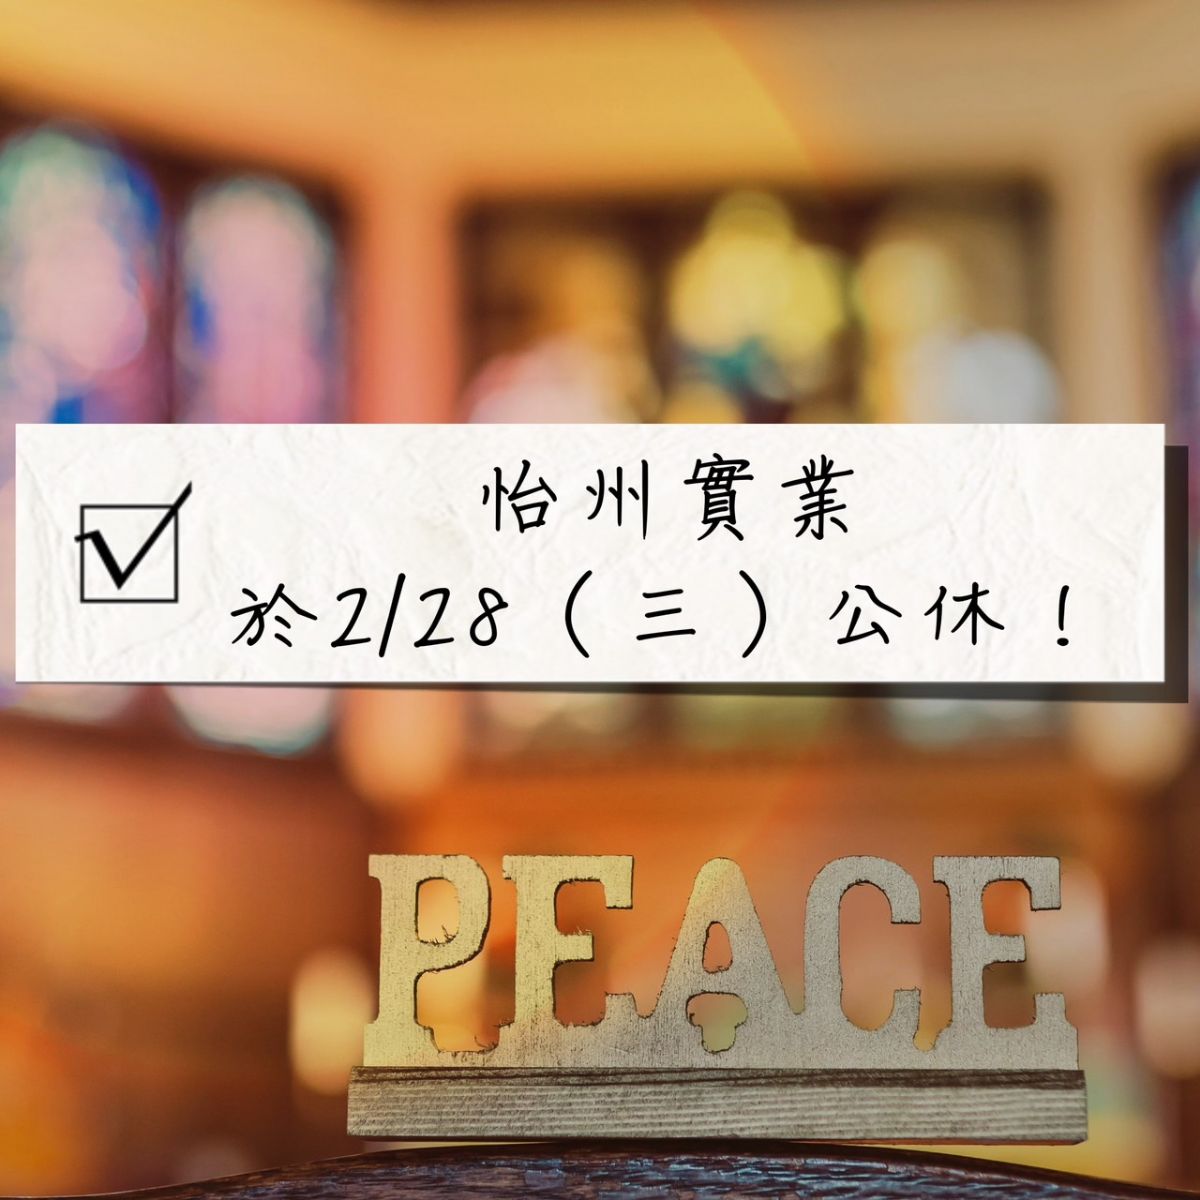 【公告】 228和平紀念日